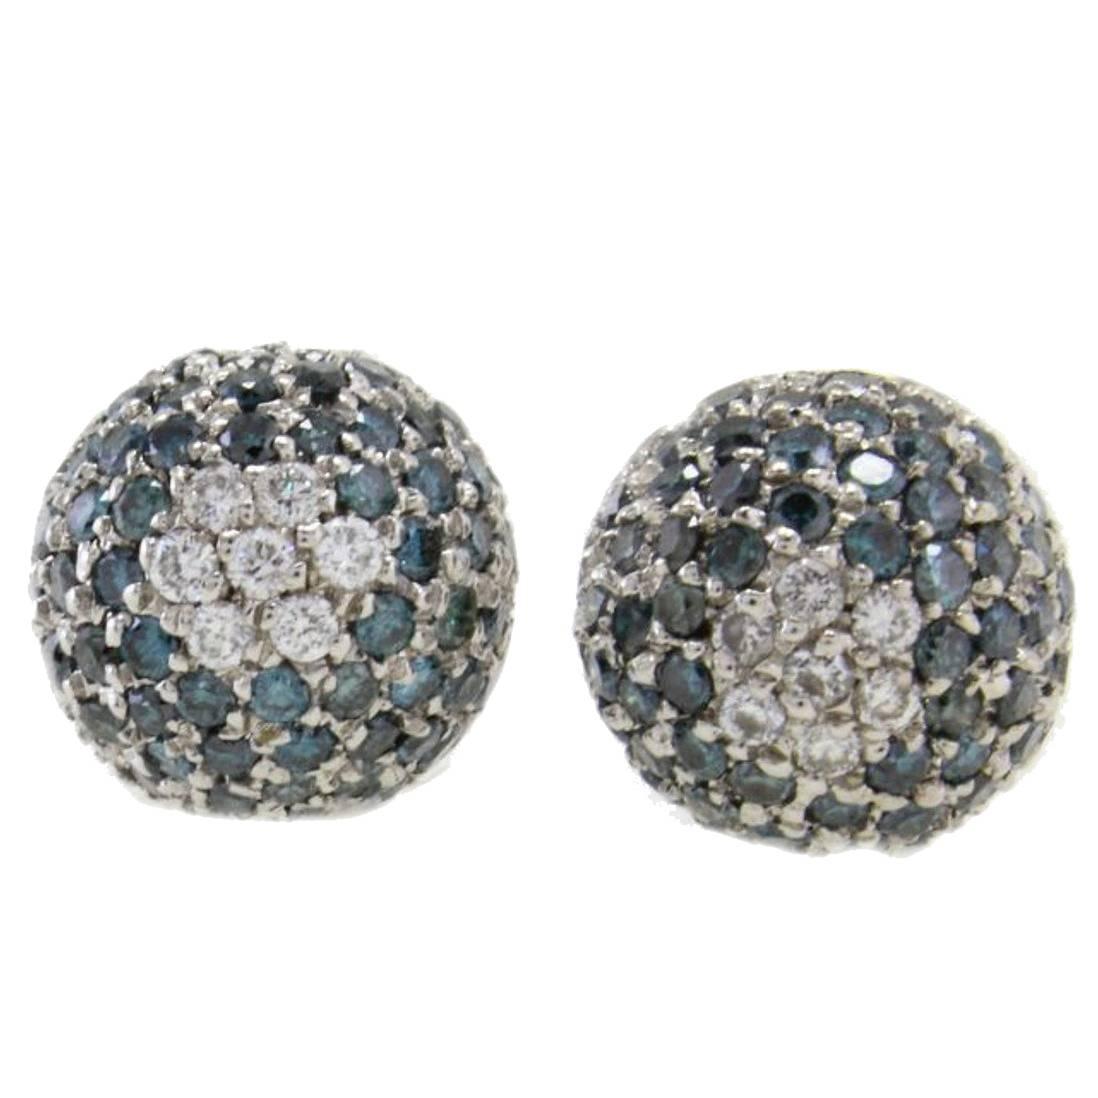 Little Dome Diamond and Fancy Diamond 18 Karat White Earrings